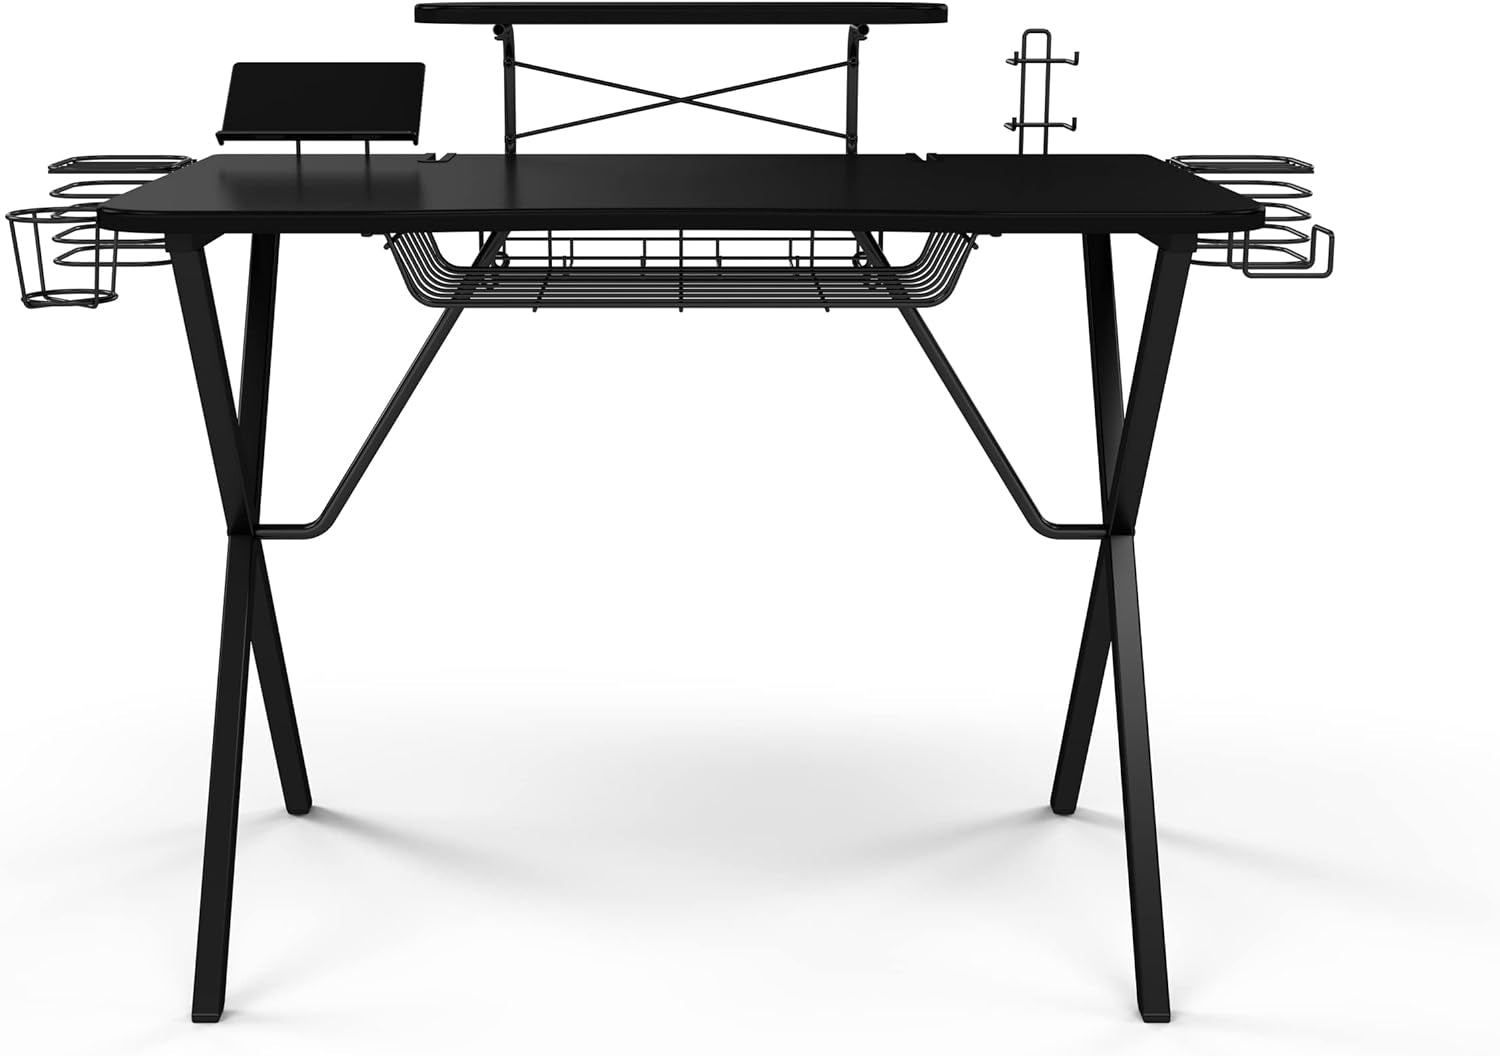 Gaming Desk with Carbon-Fiber Desktop, X-Legs, Detachable Monitor Platform, Tablet/Phone Holder, Speaker Stands - Black